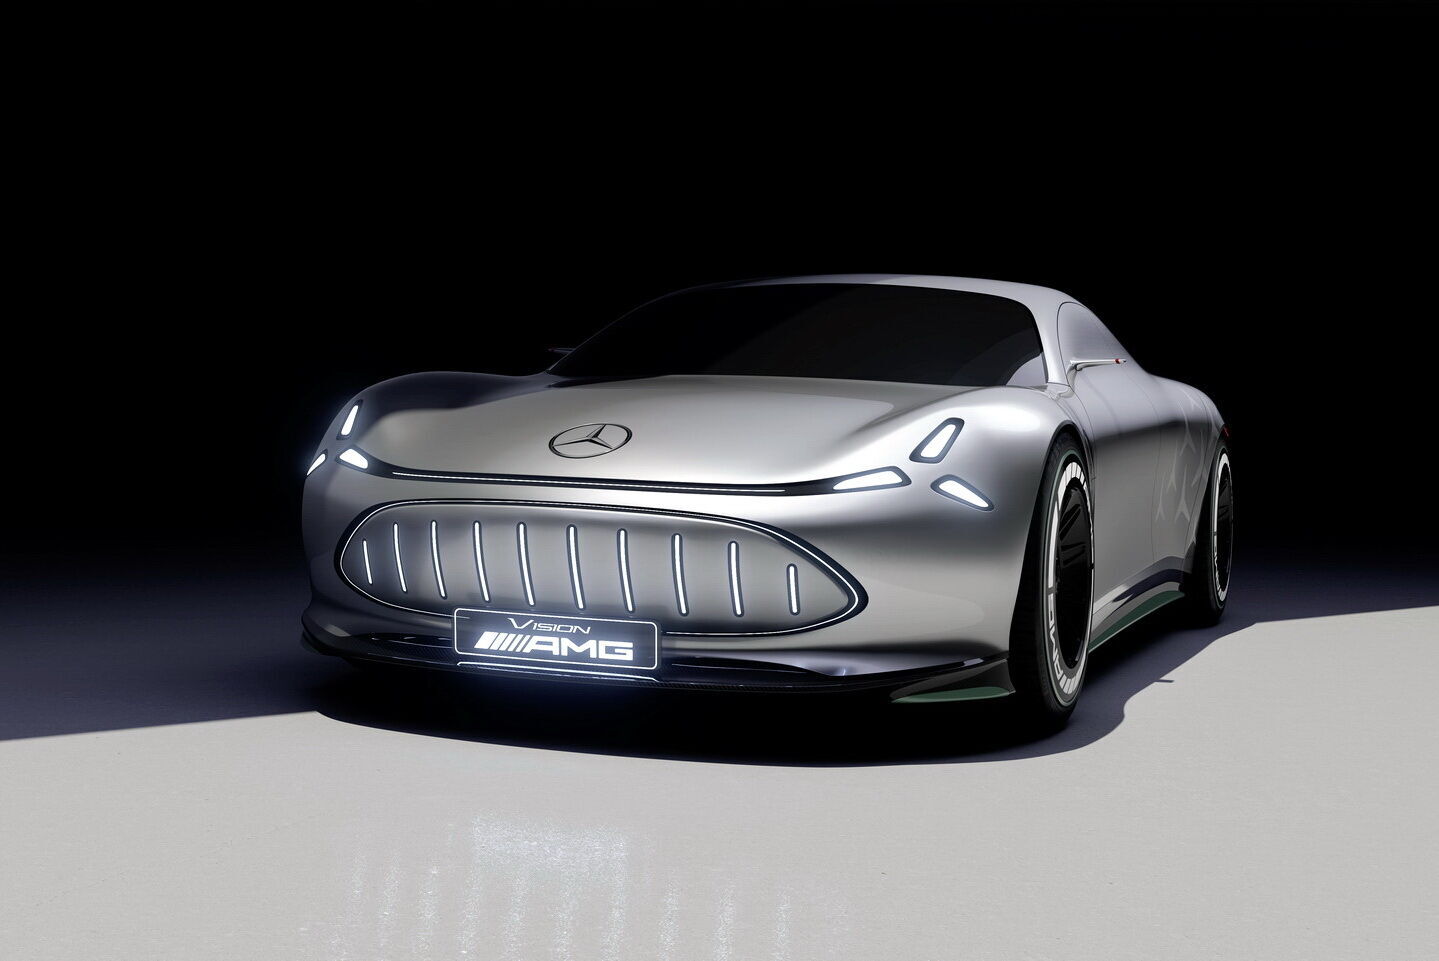 Vision AMG получил необычную светотехнику, напоминающую трехлучевую звезду – символ бренда Mercedes-Benz